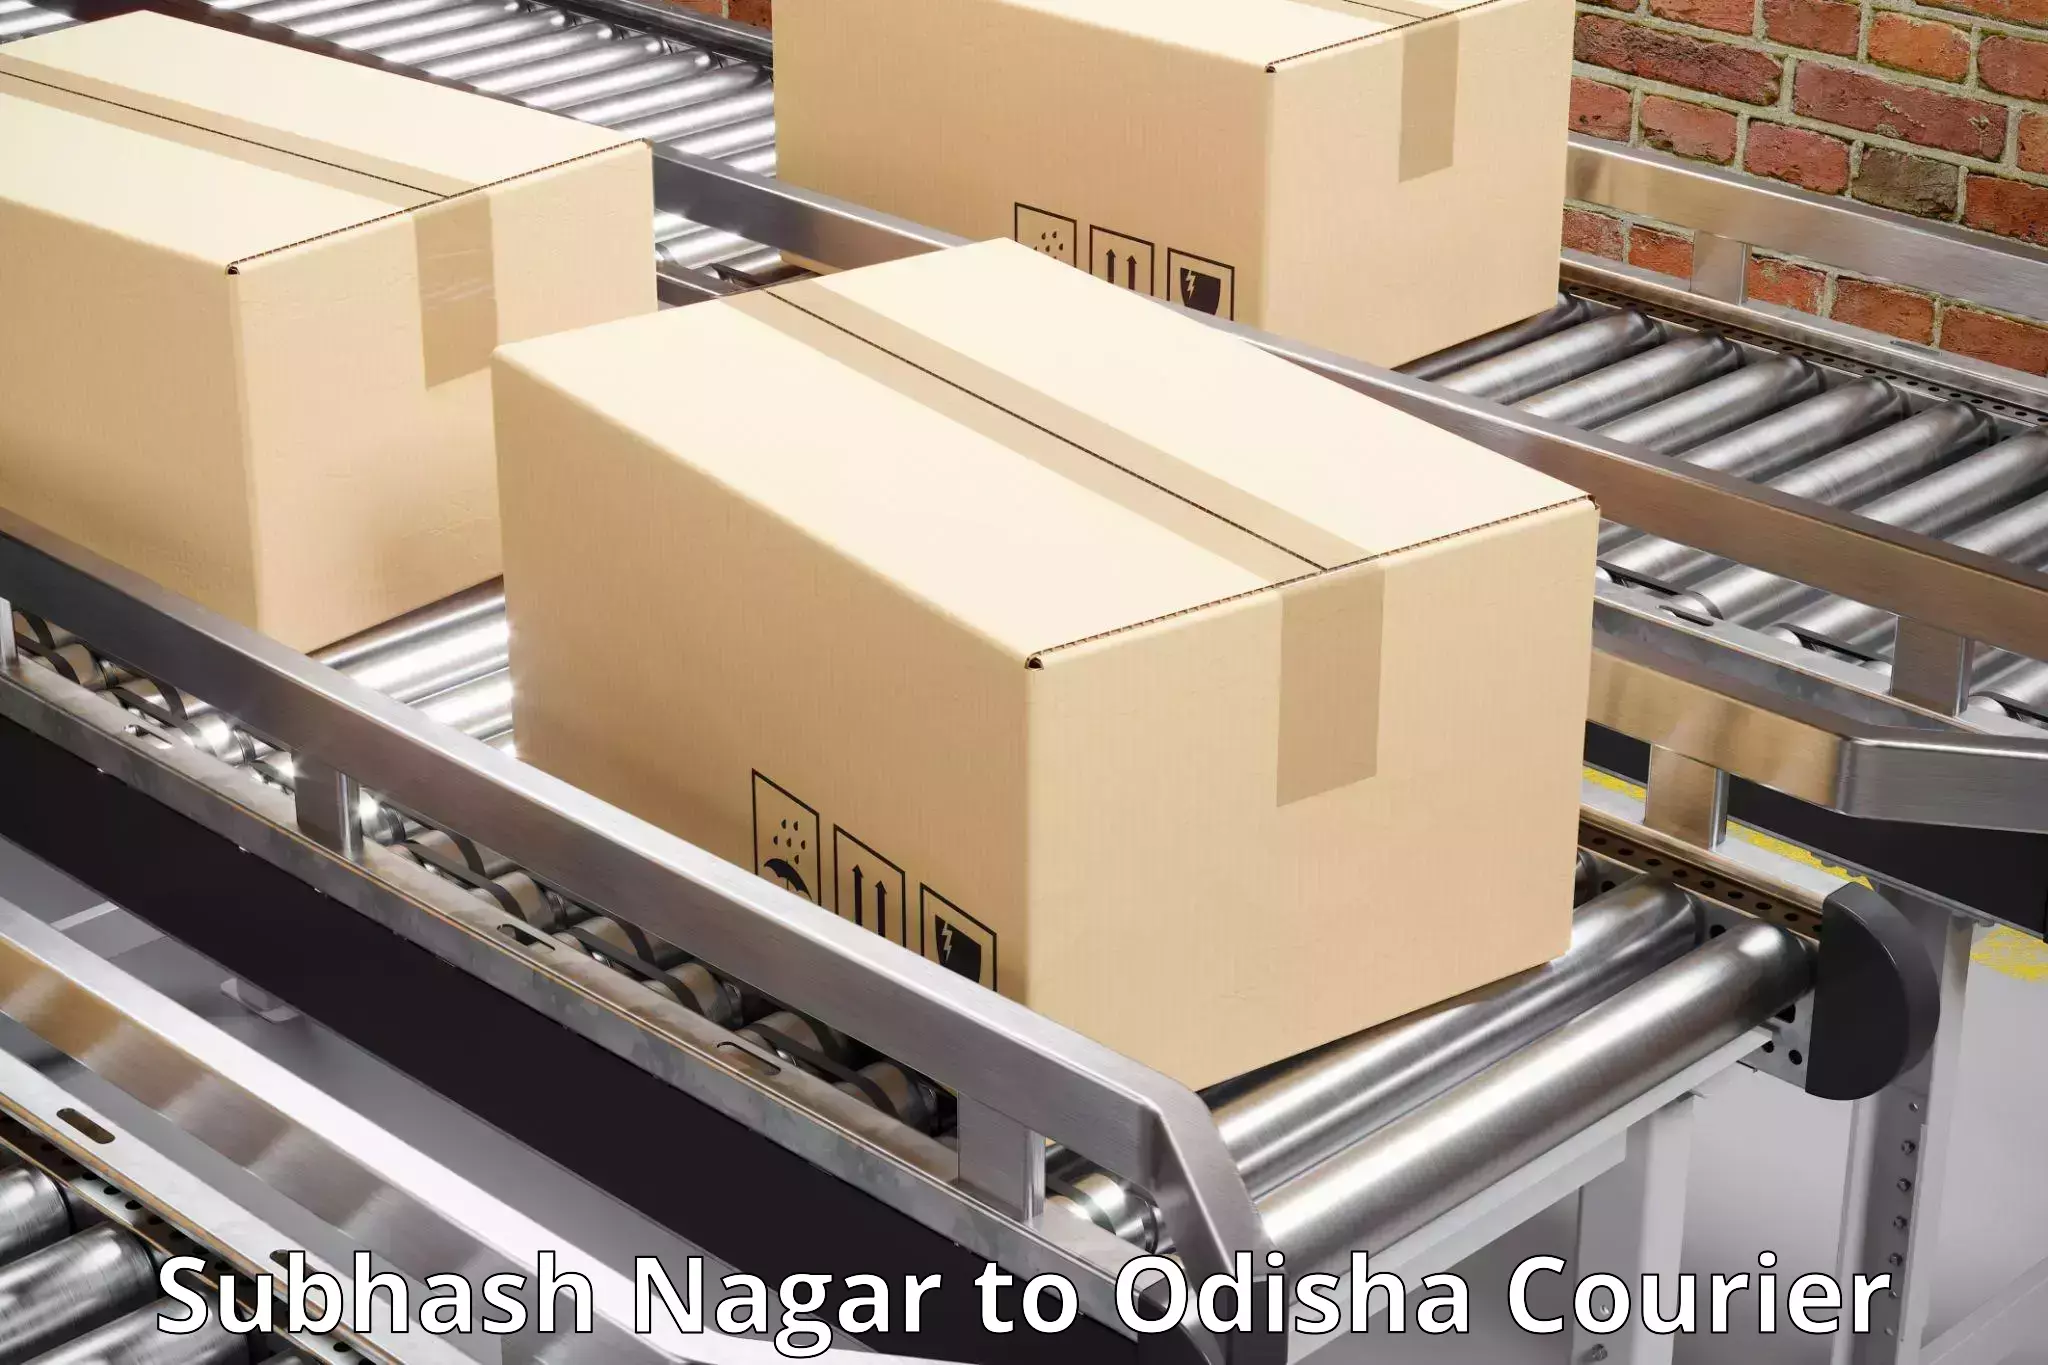 User-friendly courier app Subhash Nagar to Khariar